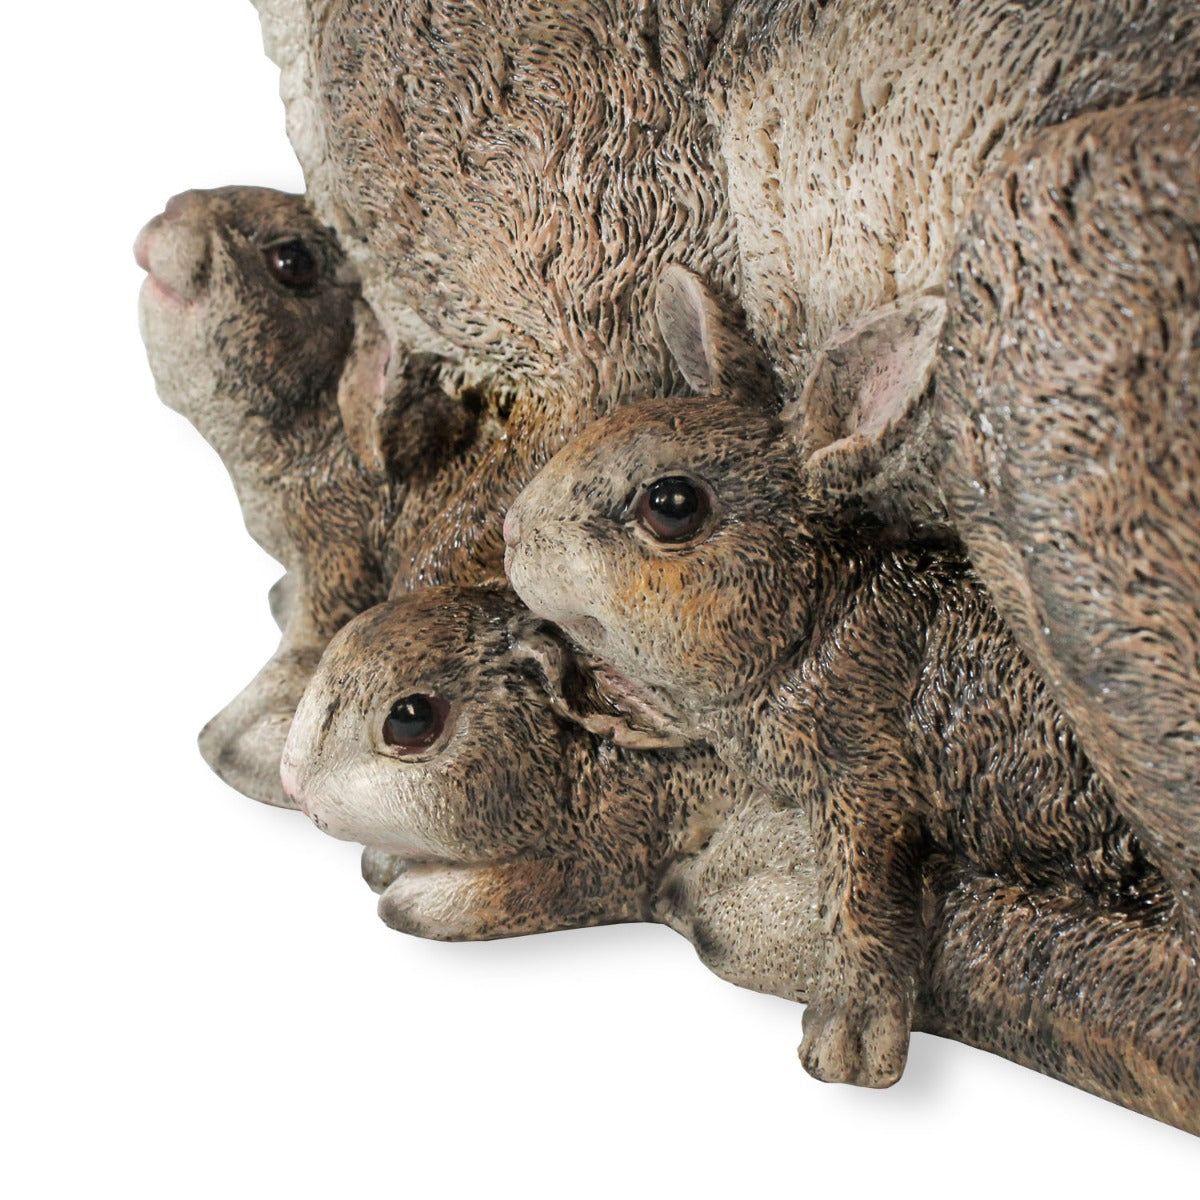 Dekofigur Hase Häsin Claudia mit Jungen Kaninchen Figur lebensecht Osterhasen Deko Gartenfigur Hase